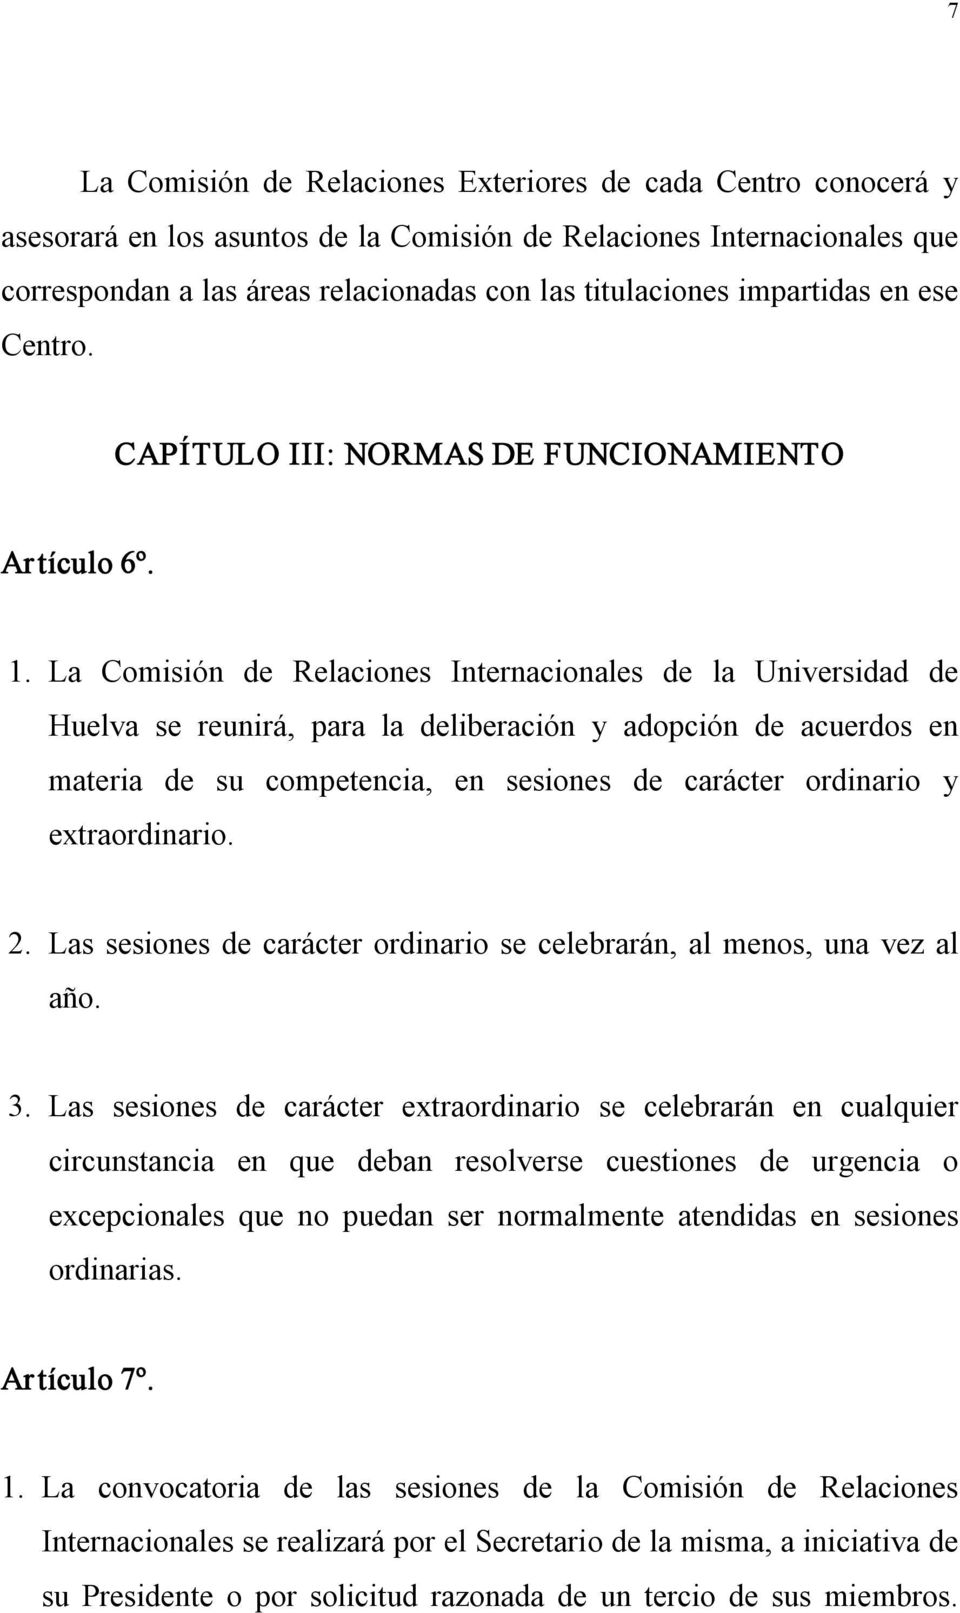 La Comisión de Relaciones Internacionales de la Universidad de Huelva se reunirá, para la deliberación y adopción de acuerdos en materia de su competencia, en sesiones de carácter ordinario y